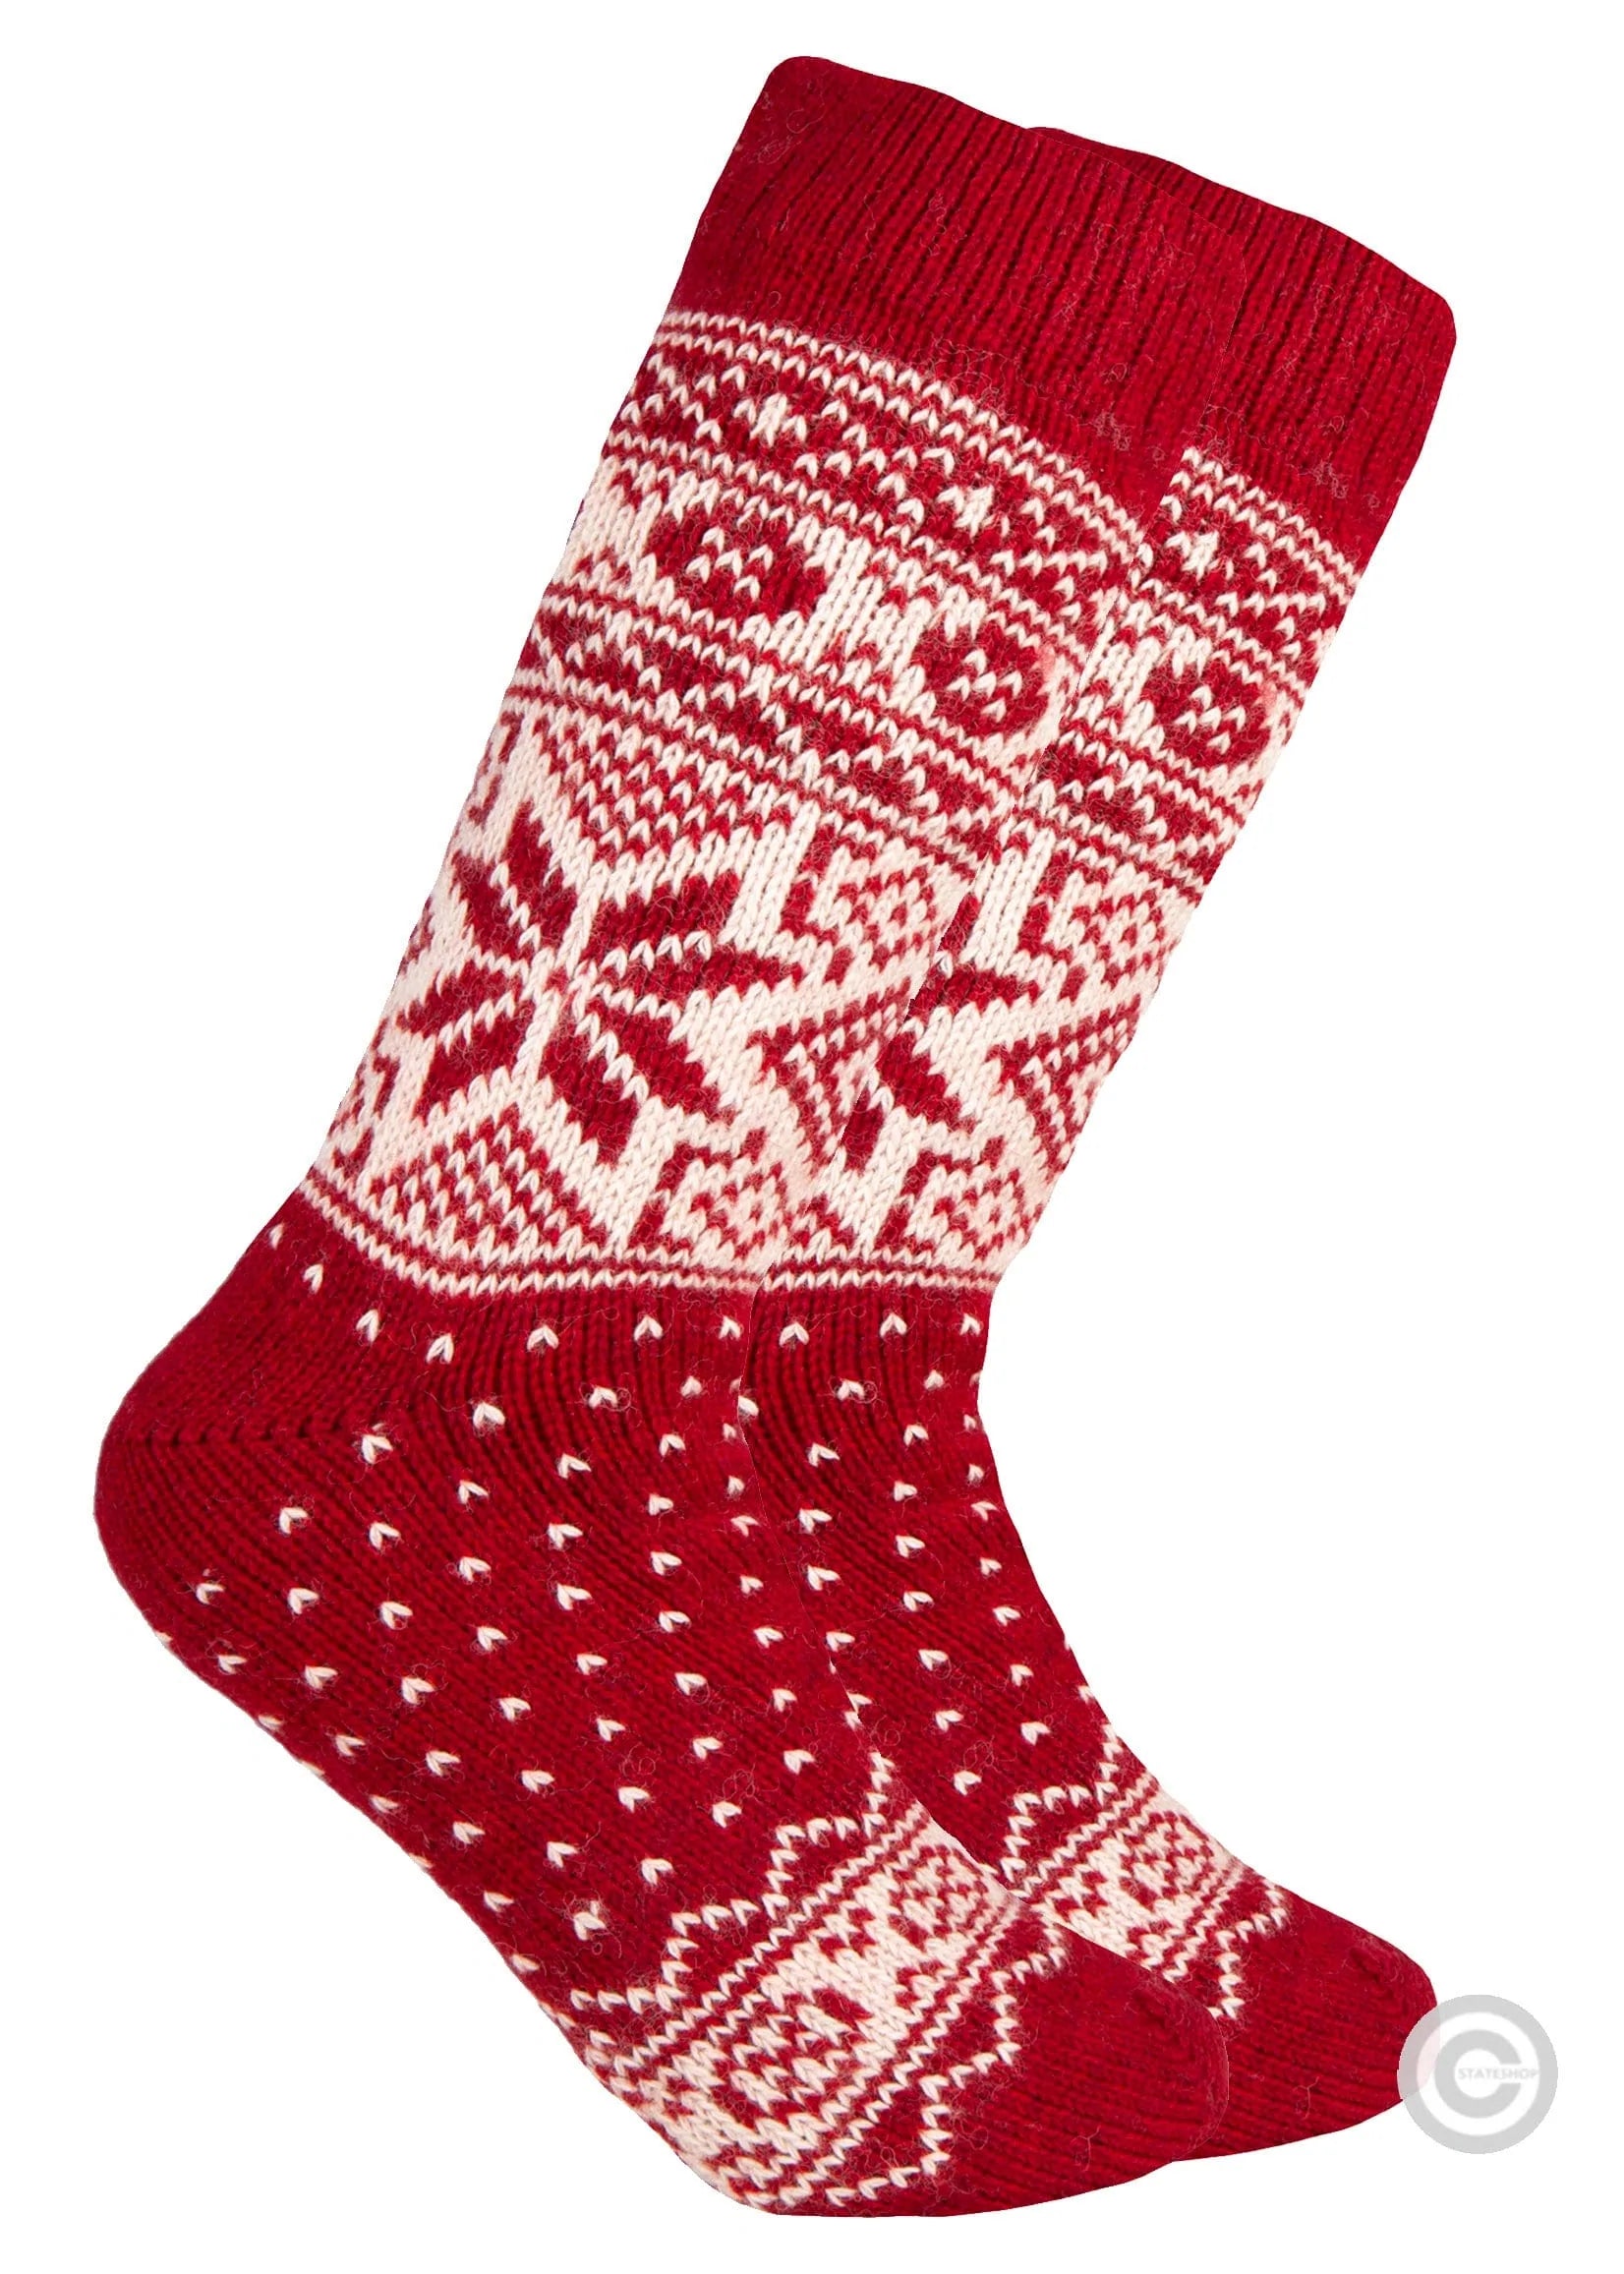 Norfinde Norwegian wool socks "Snowflake" red